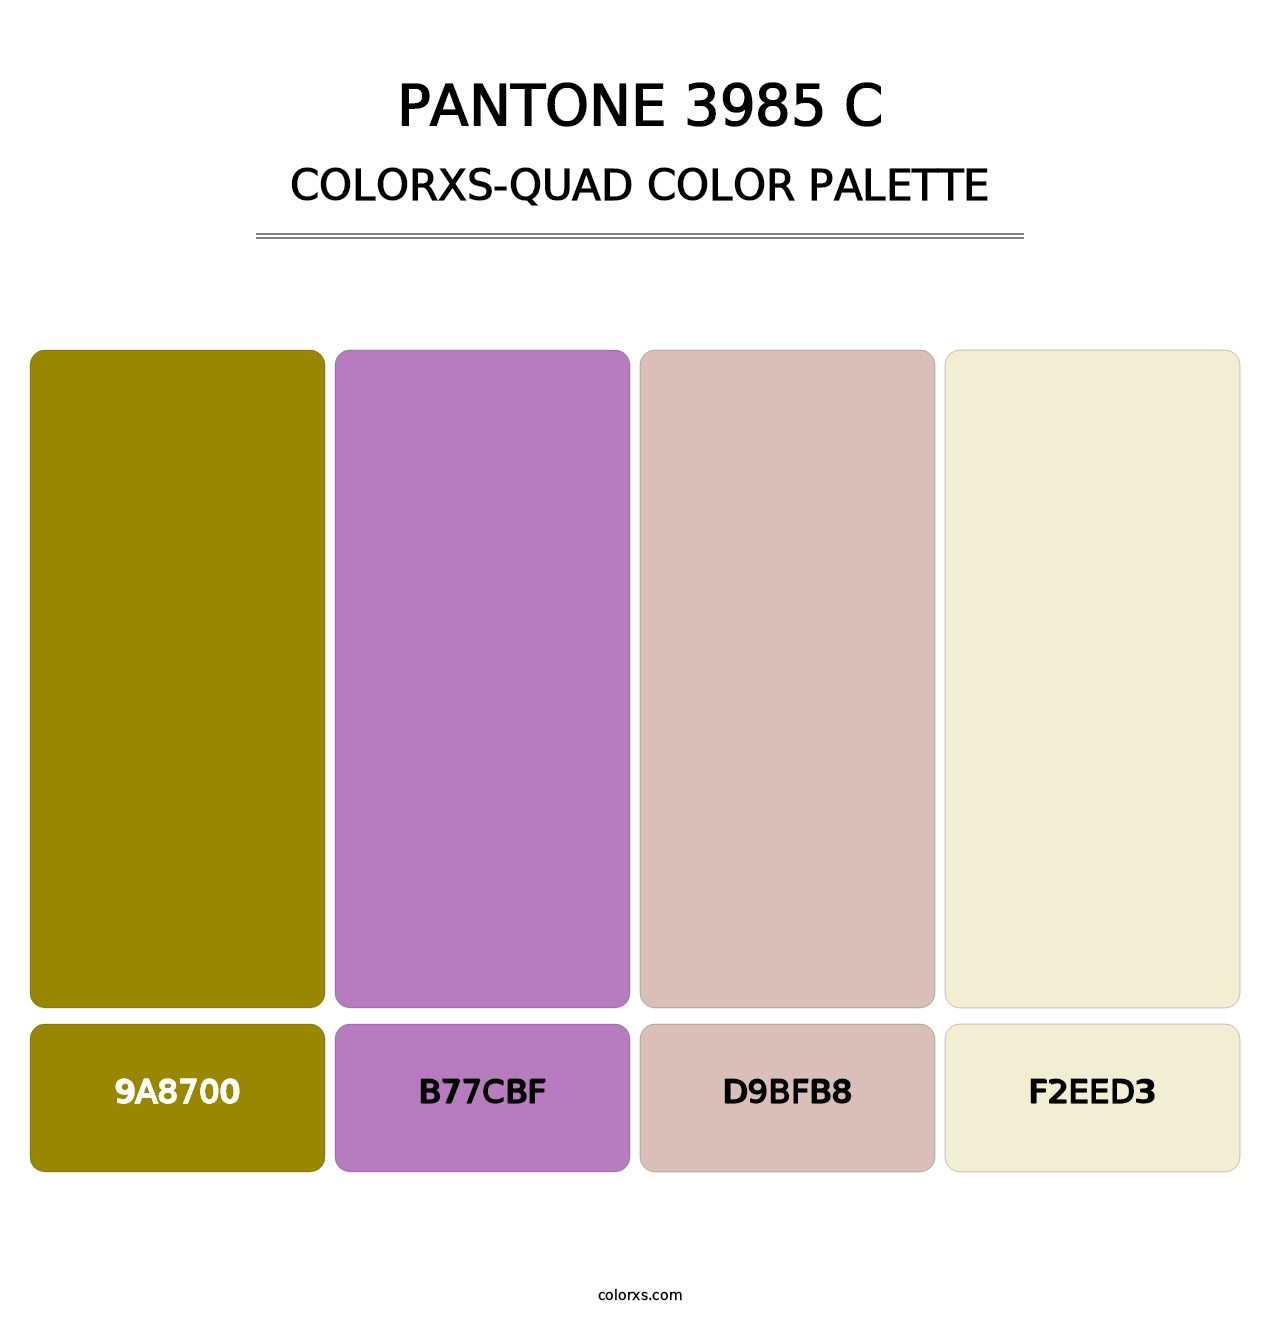 PANTONE 3985 C - Colorxs Quad Palette